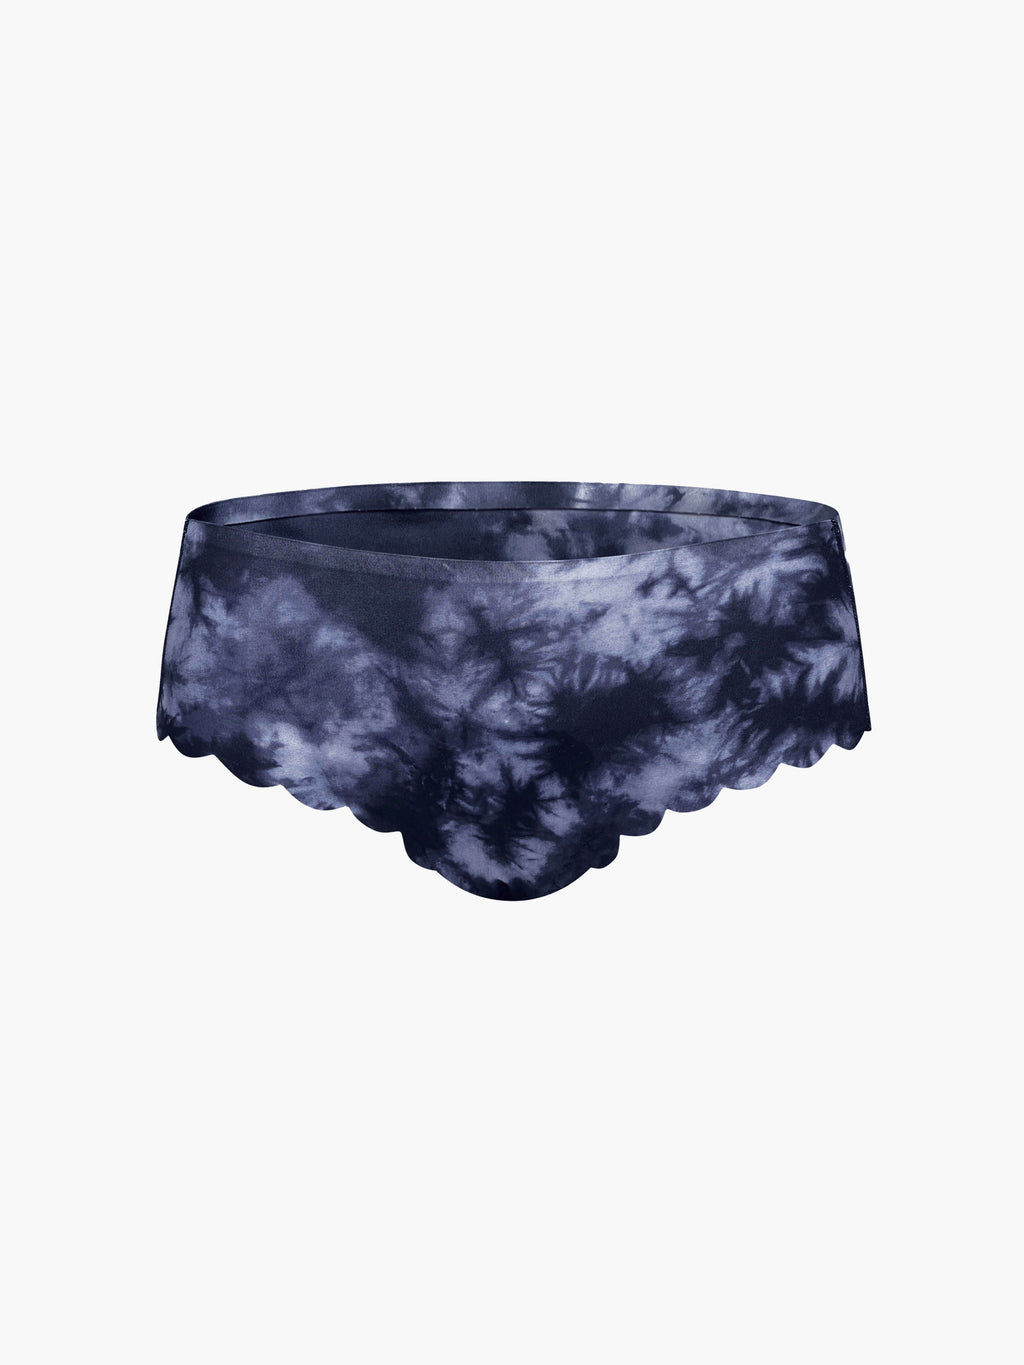 SHREDLY - Hipster Sport Underwear : Graphite Tie Dye Scallop - image